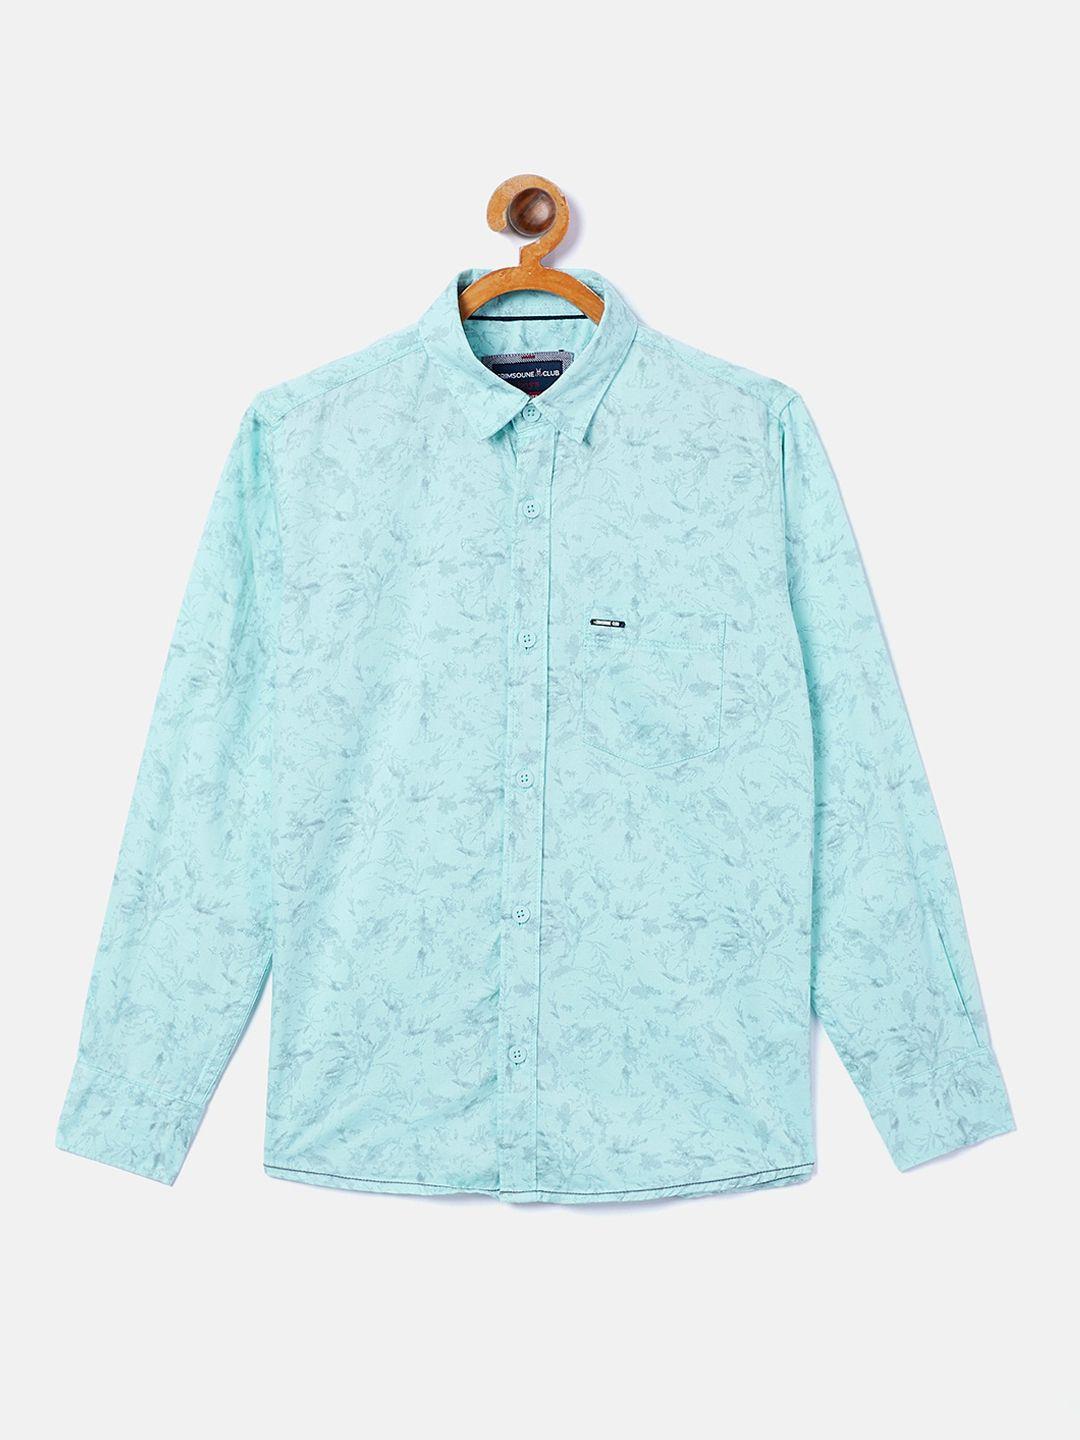 crimsoune club boys blue opaque printed casual shirt